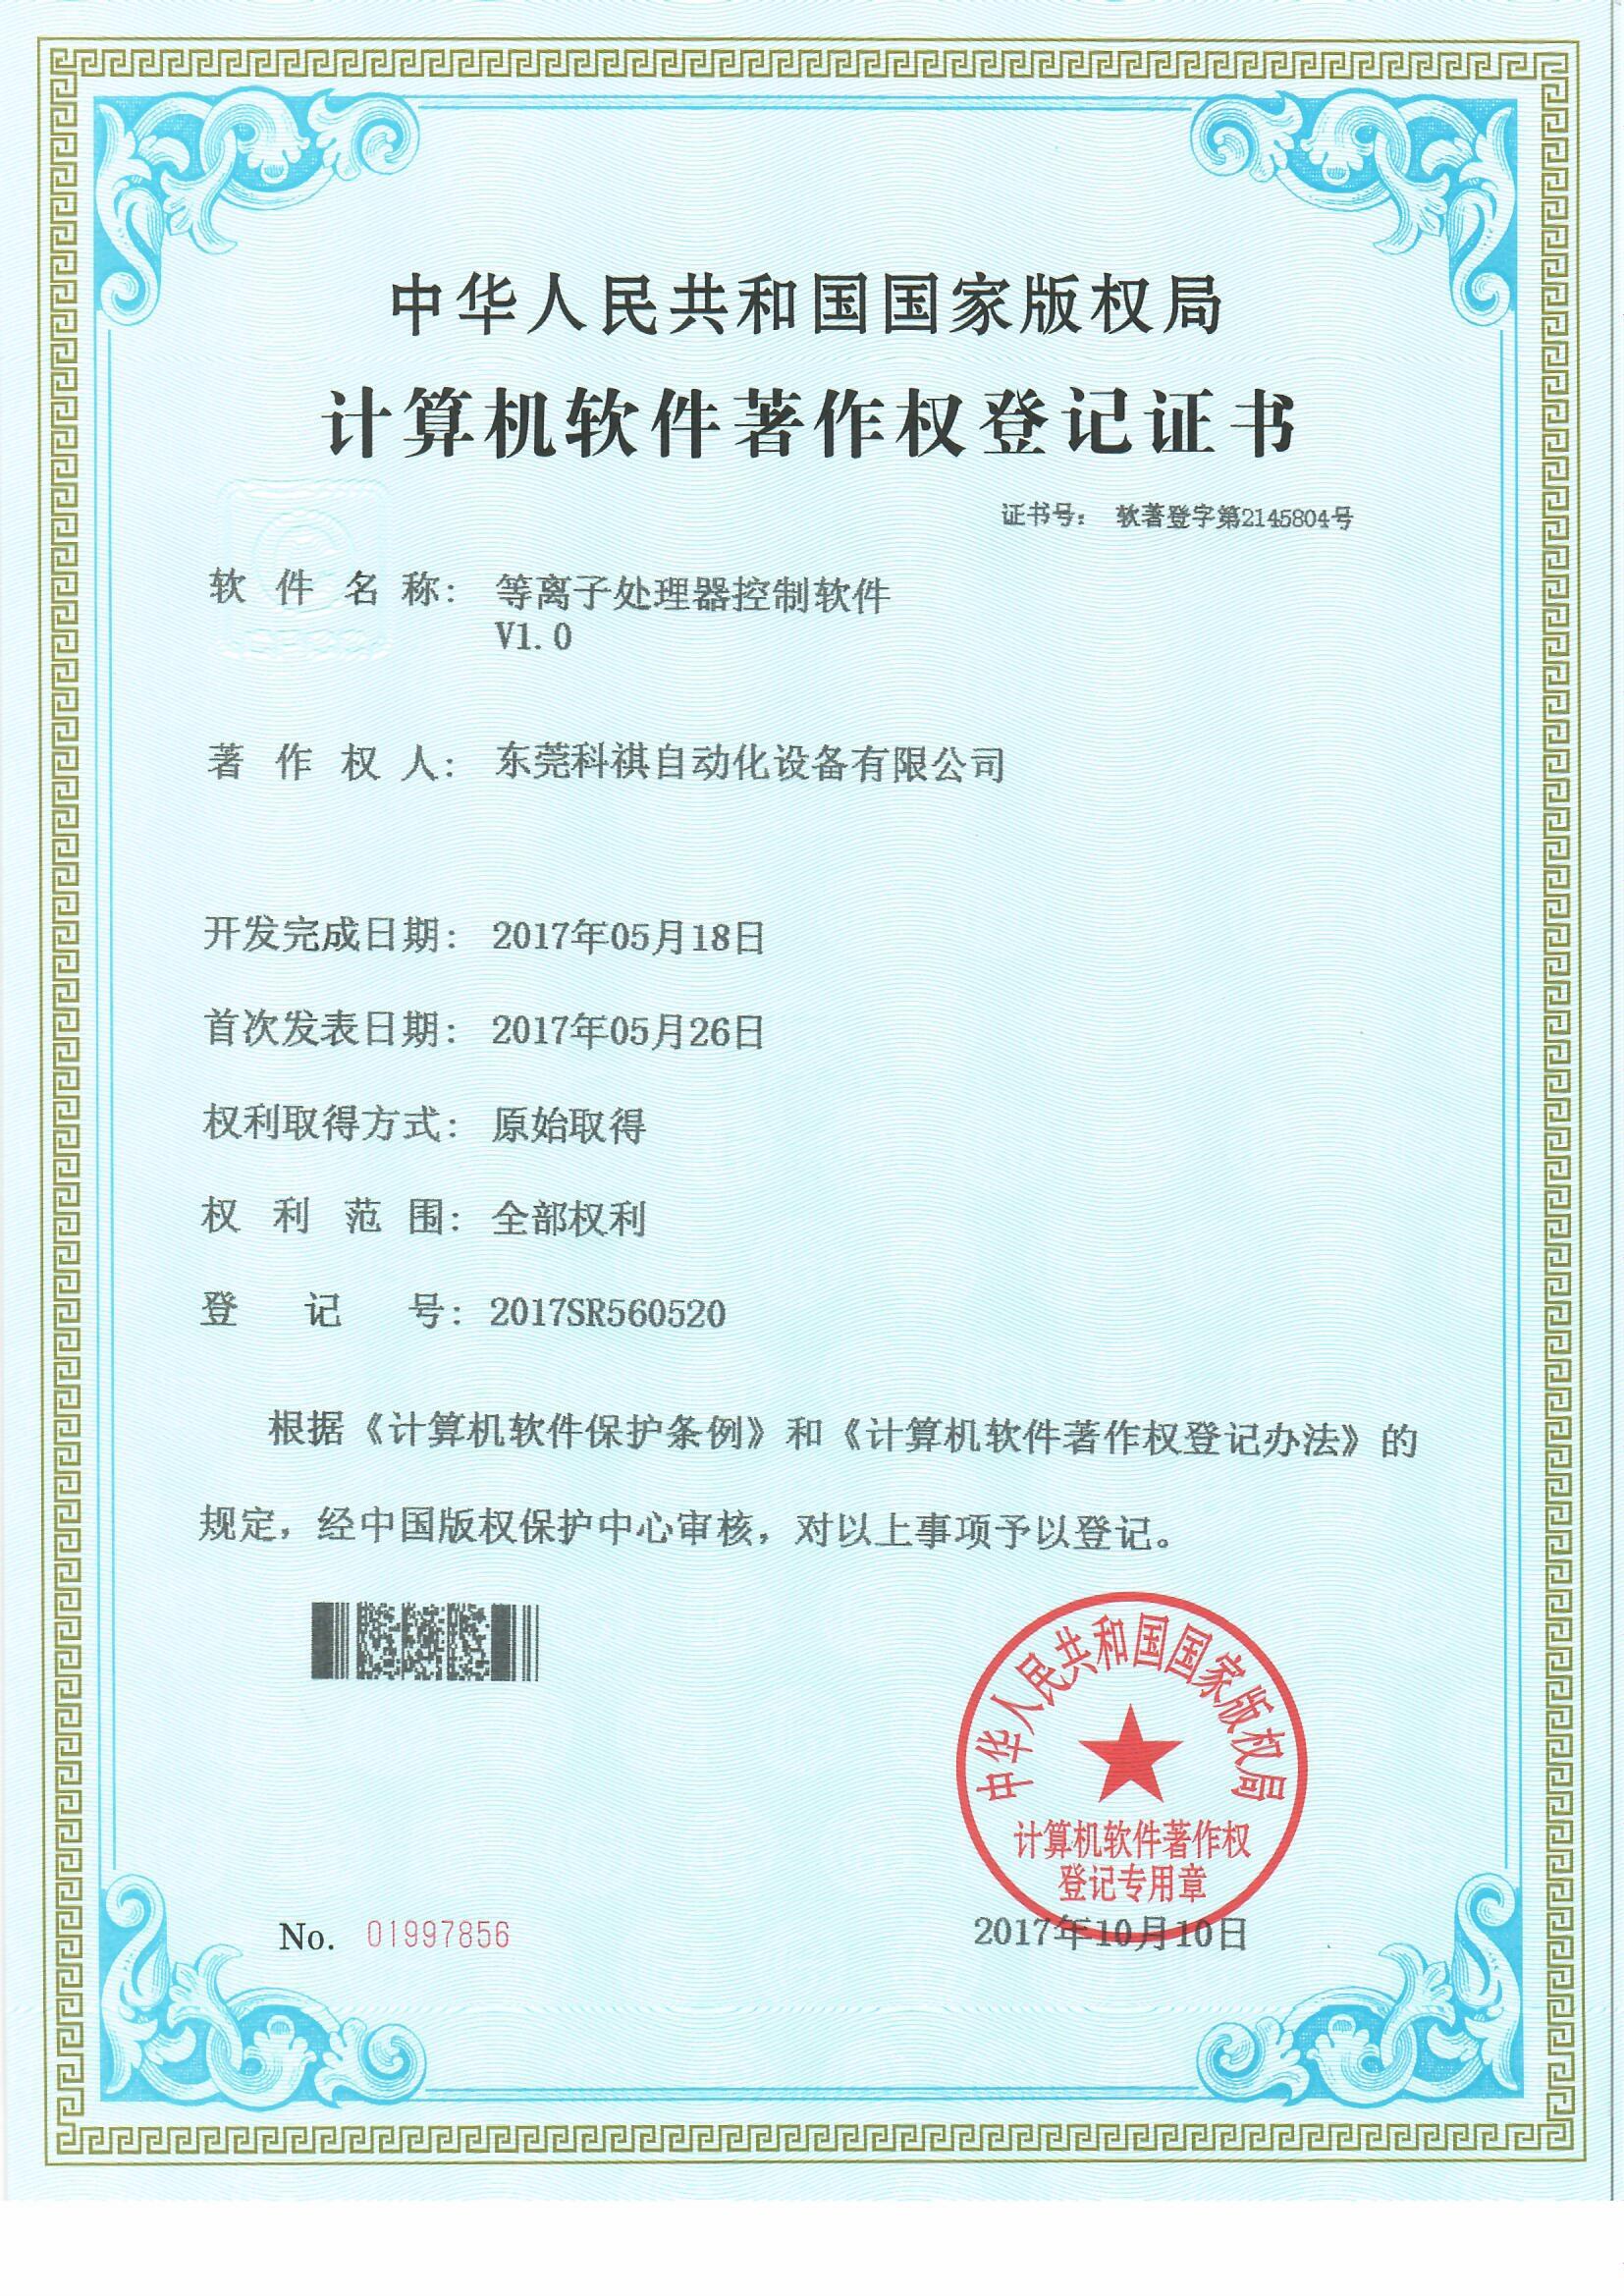 Certificado de derechos de autor de plasma